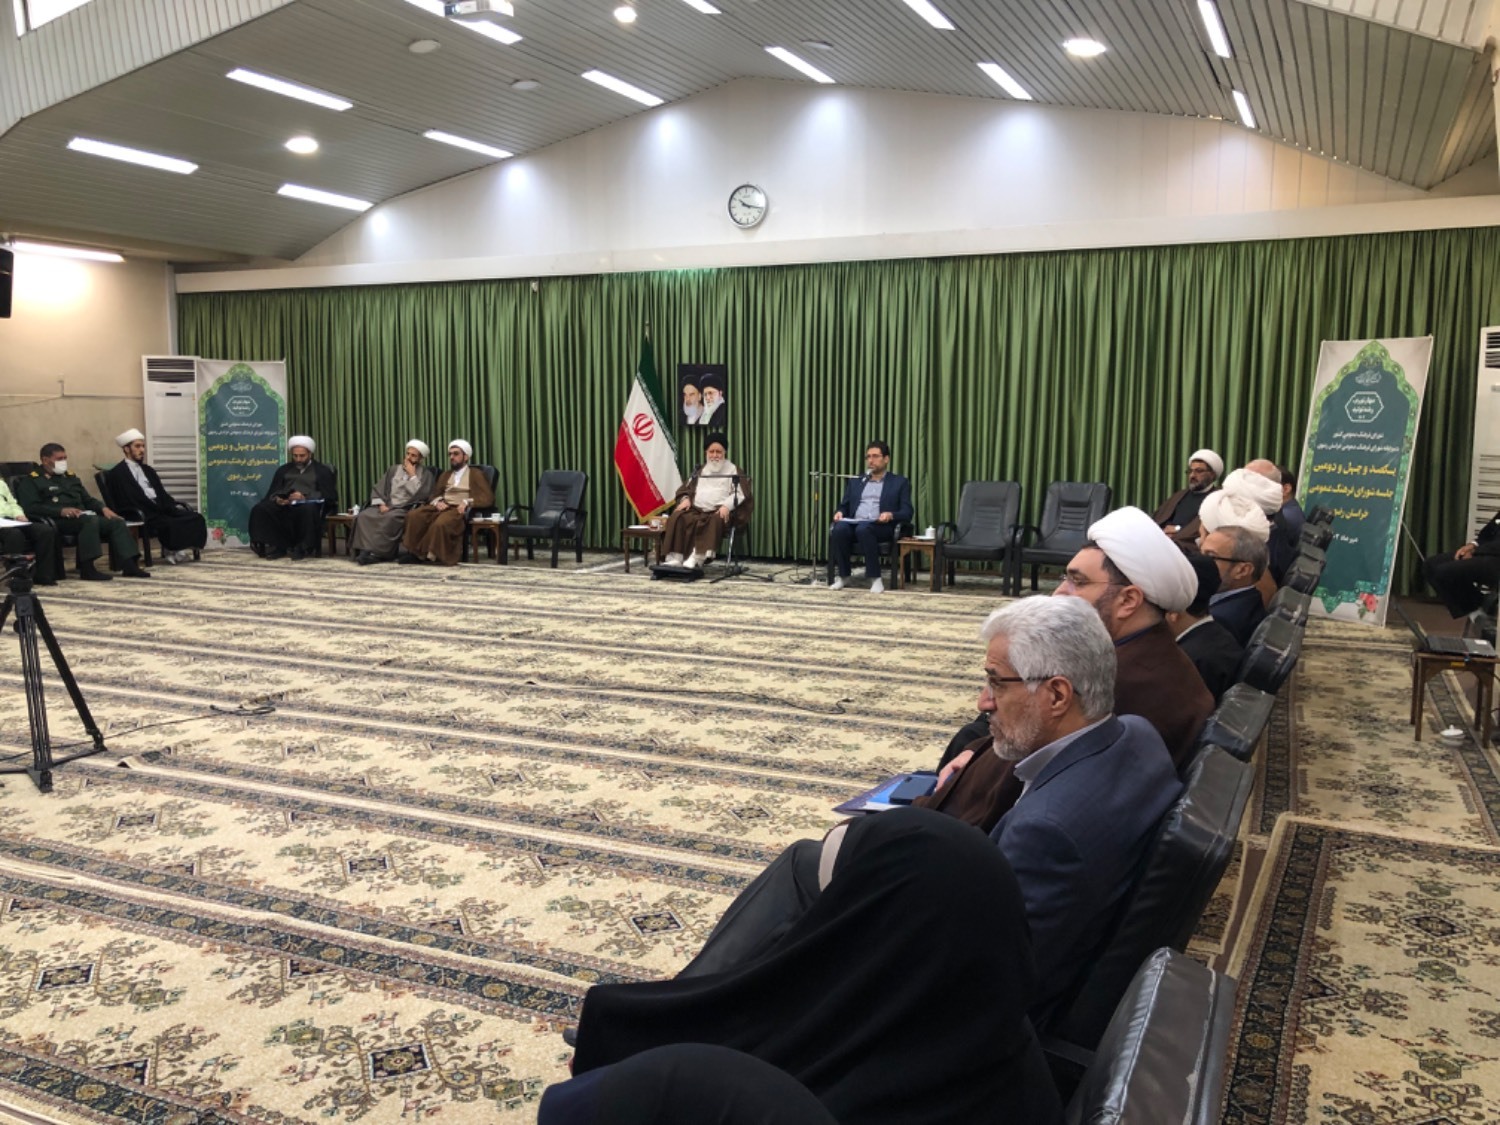 تشکیل شورای هنری خراسان رضوی با حضور اعضای شورای فرهنگ عمومی در مشهد